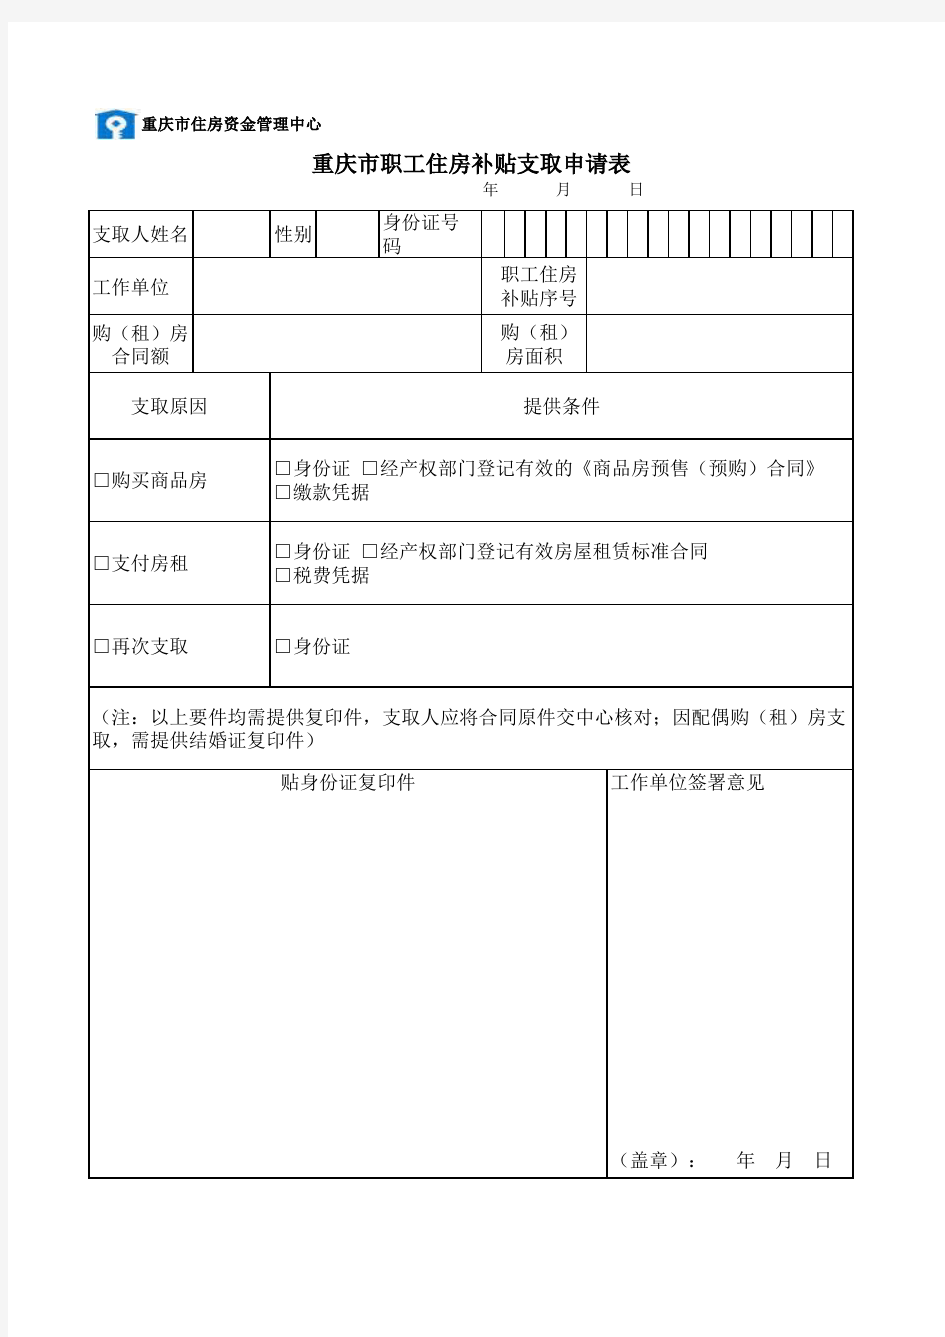 重庆市职工住房补贴支取申请表(个人) (1)